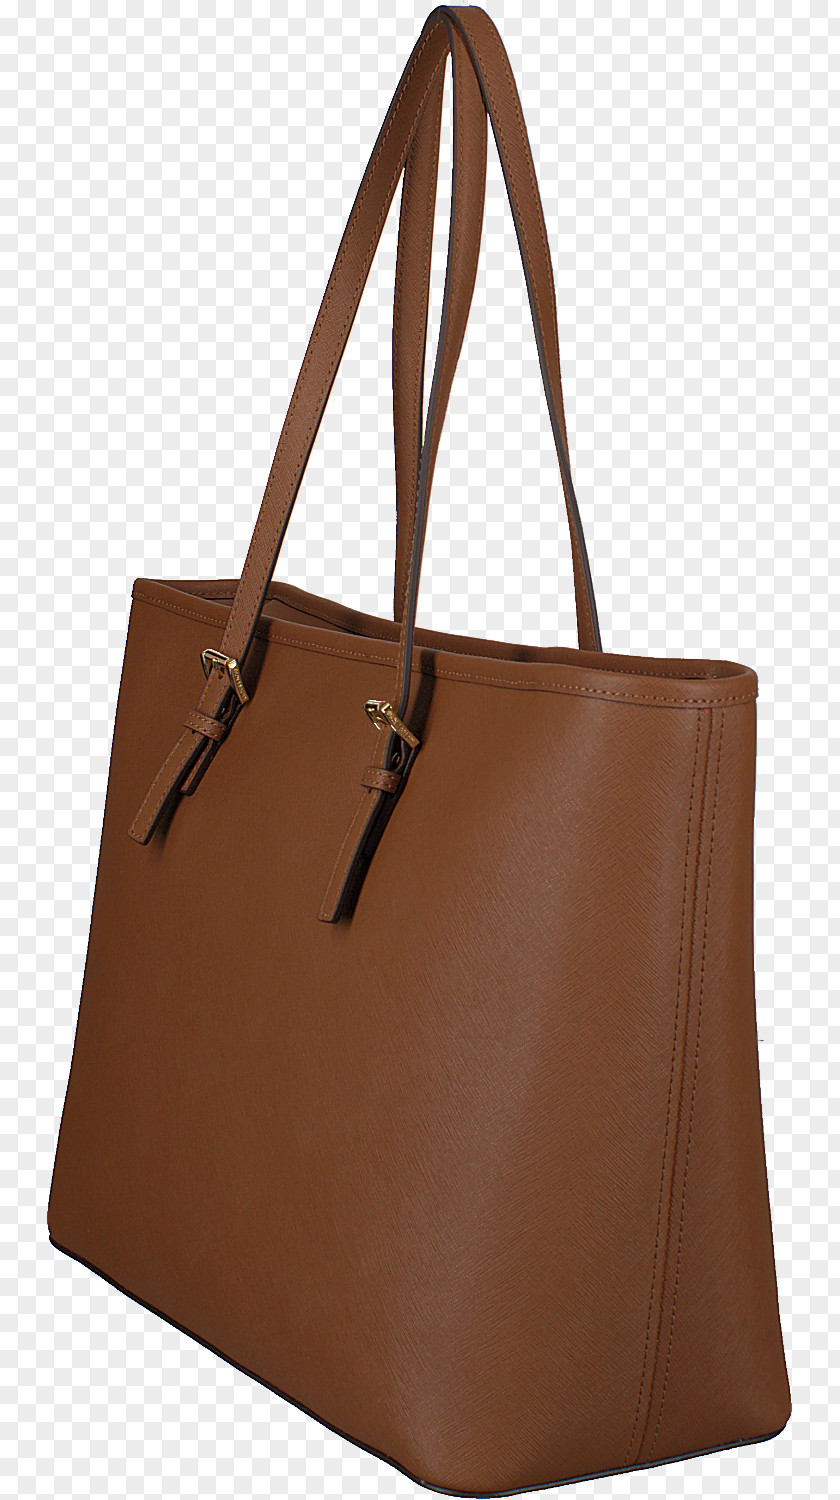 Michael Kors Handbags Tote Bag Messenger Bags Handbag Leather PNG